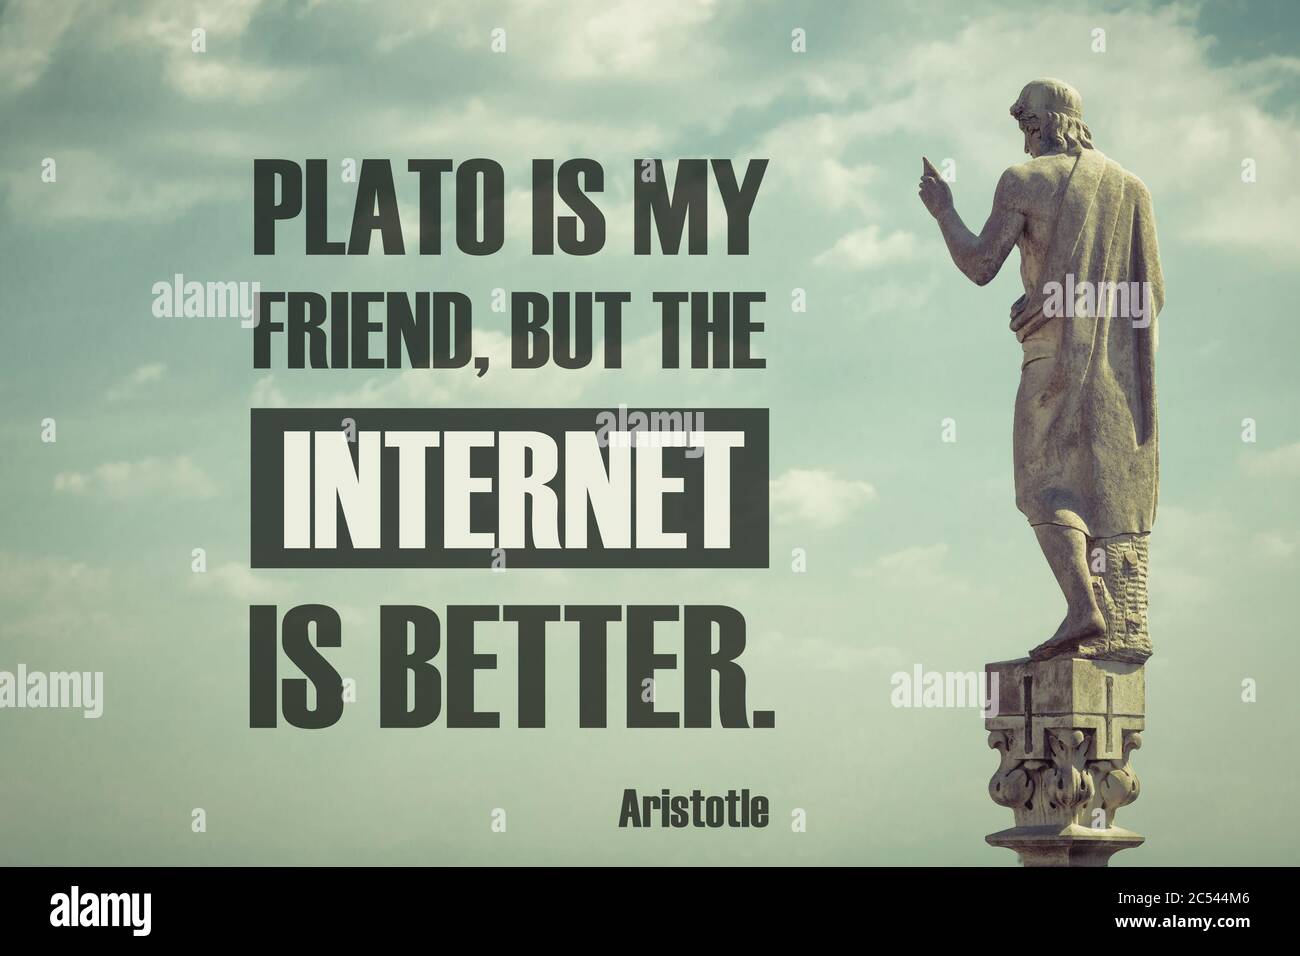 Cita del famoso filósofo Aristóteles. Cómico divertido texto: Platón es mi amigo, pero el Internet es mejor. Cita corregida de autor antiguo Foto de stock